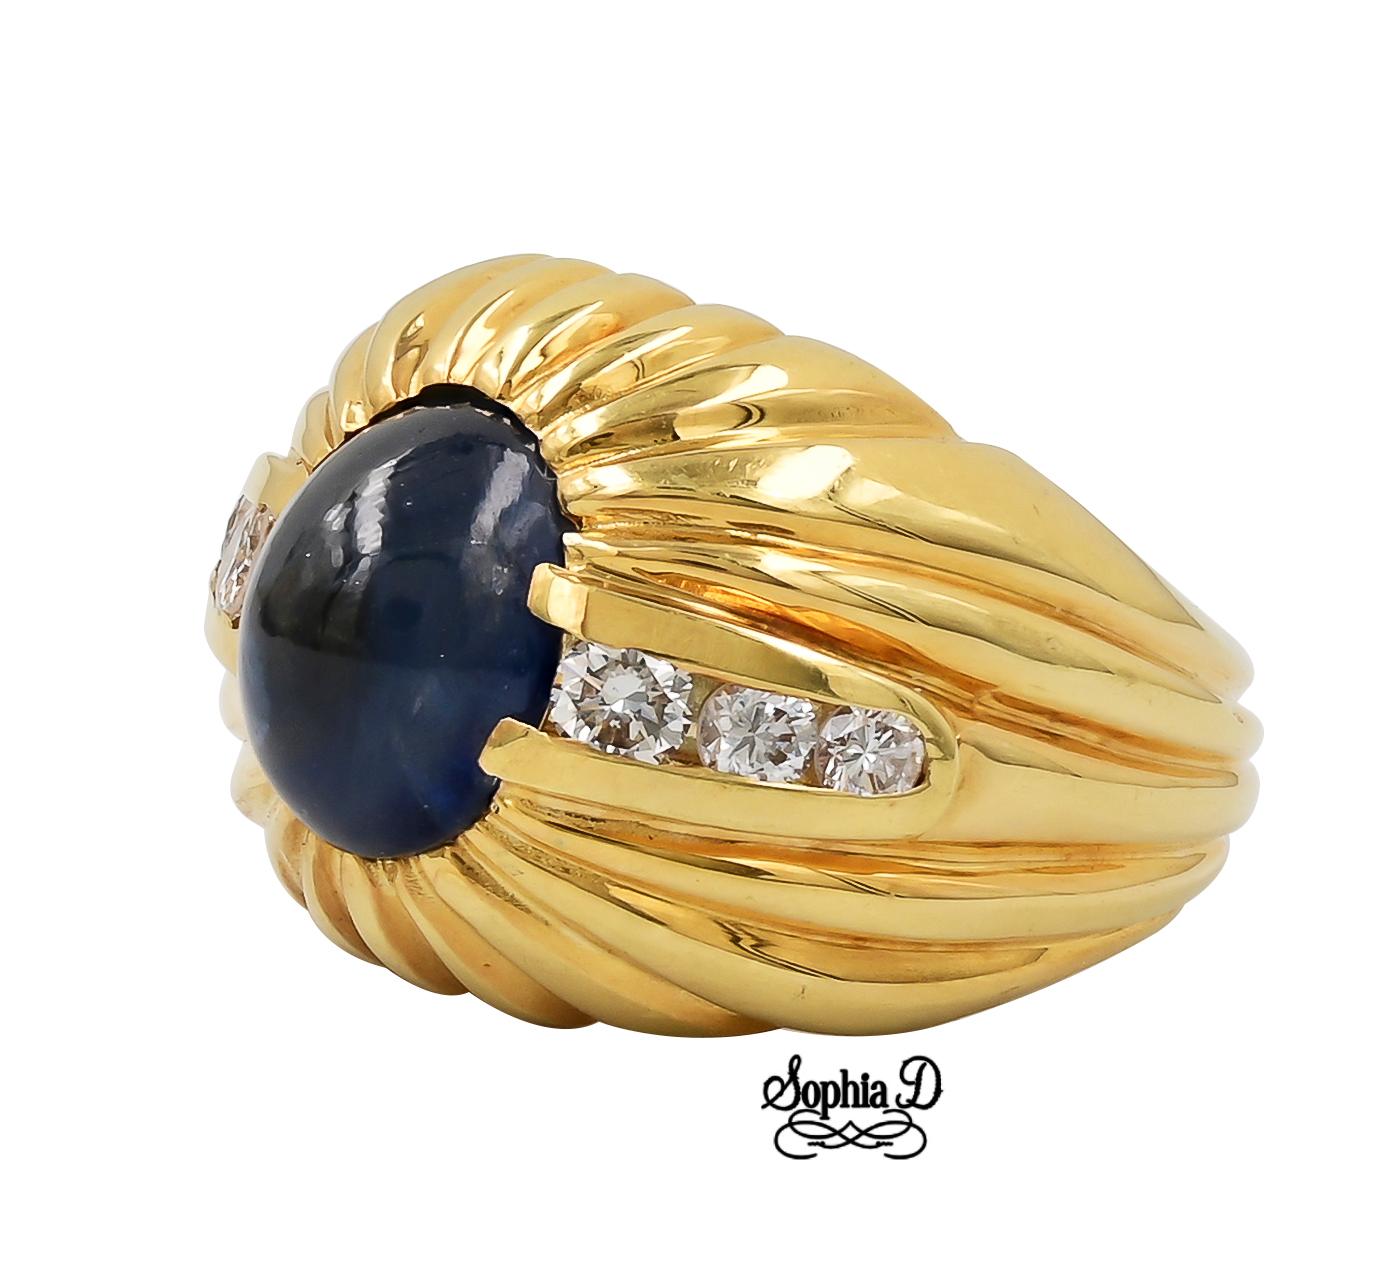 Ring aus 18 Karat Gelbgold mit blauem Saphir und Diamant.

Sophia D von Joseph Dardashti LTD ist seit 35 Jahren weltweit bekannt und lässt sich vom klassischen Art-Déco-Design inspirieren, das mit modernen Fertigungstechniken verschmilzt.  